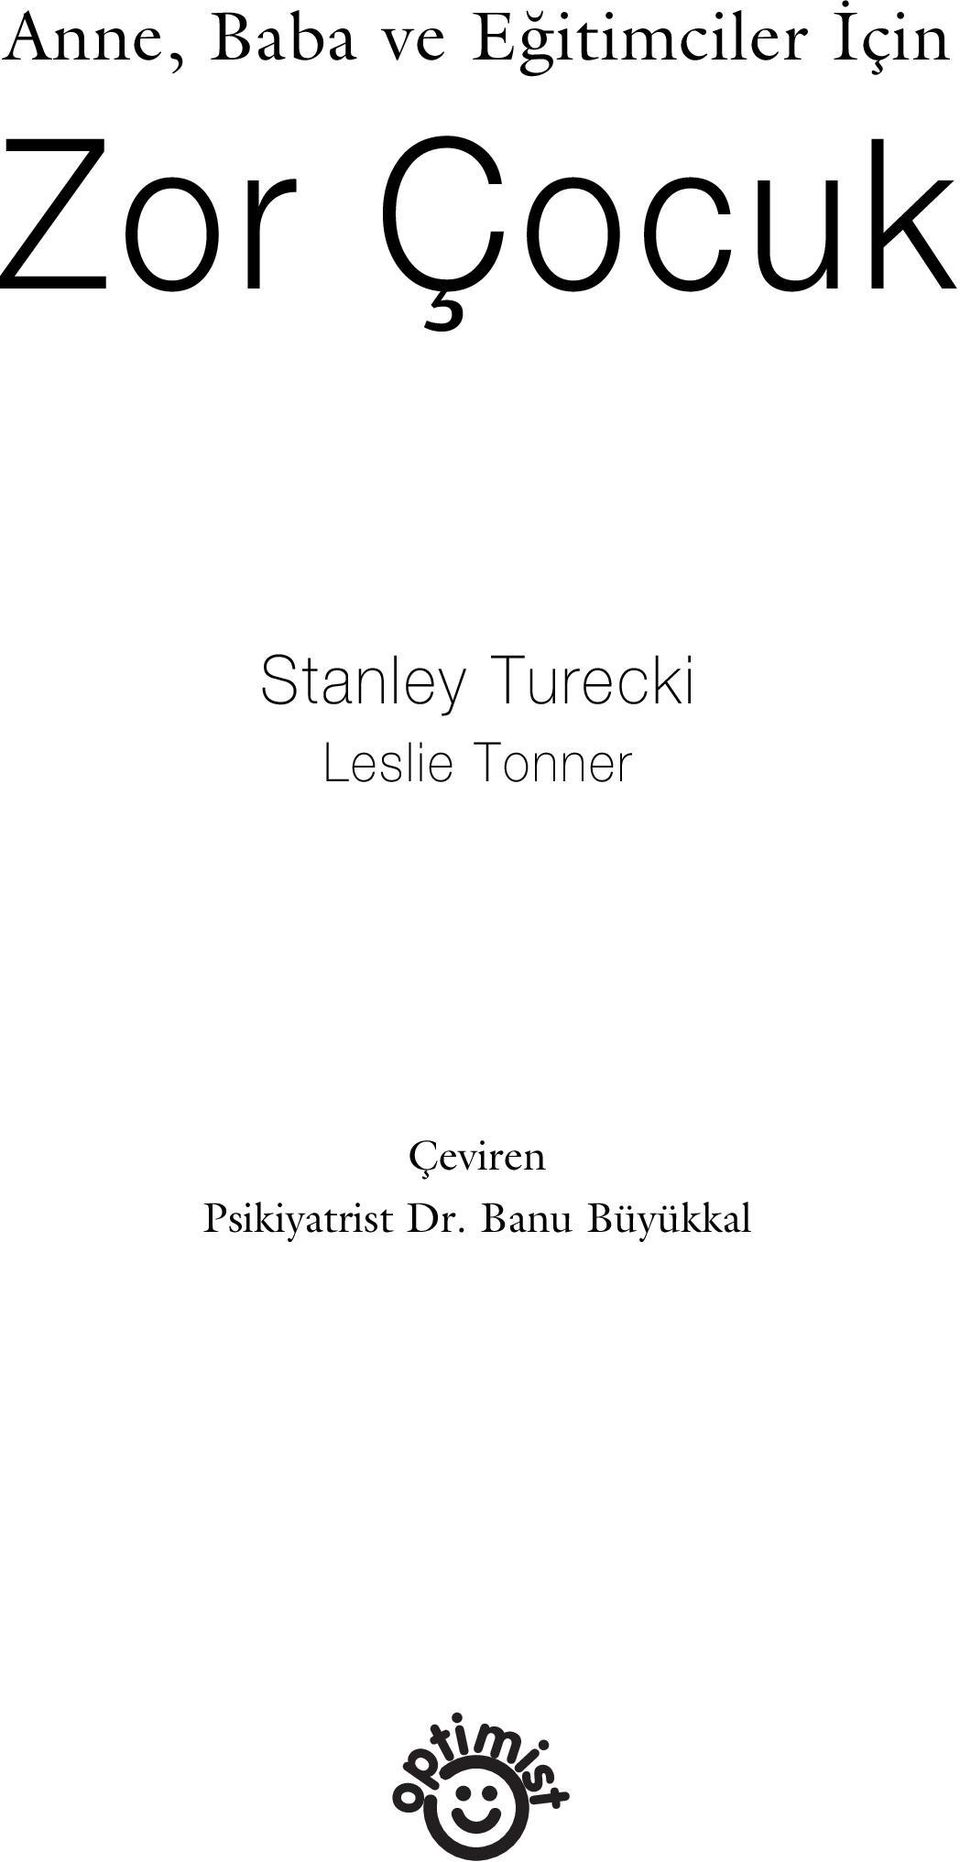 Turecki Leslie Tonner